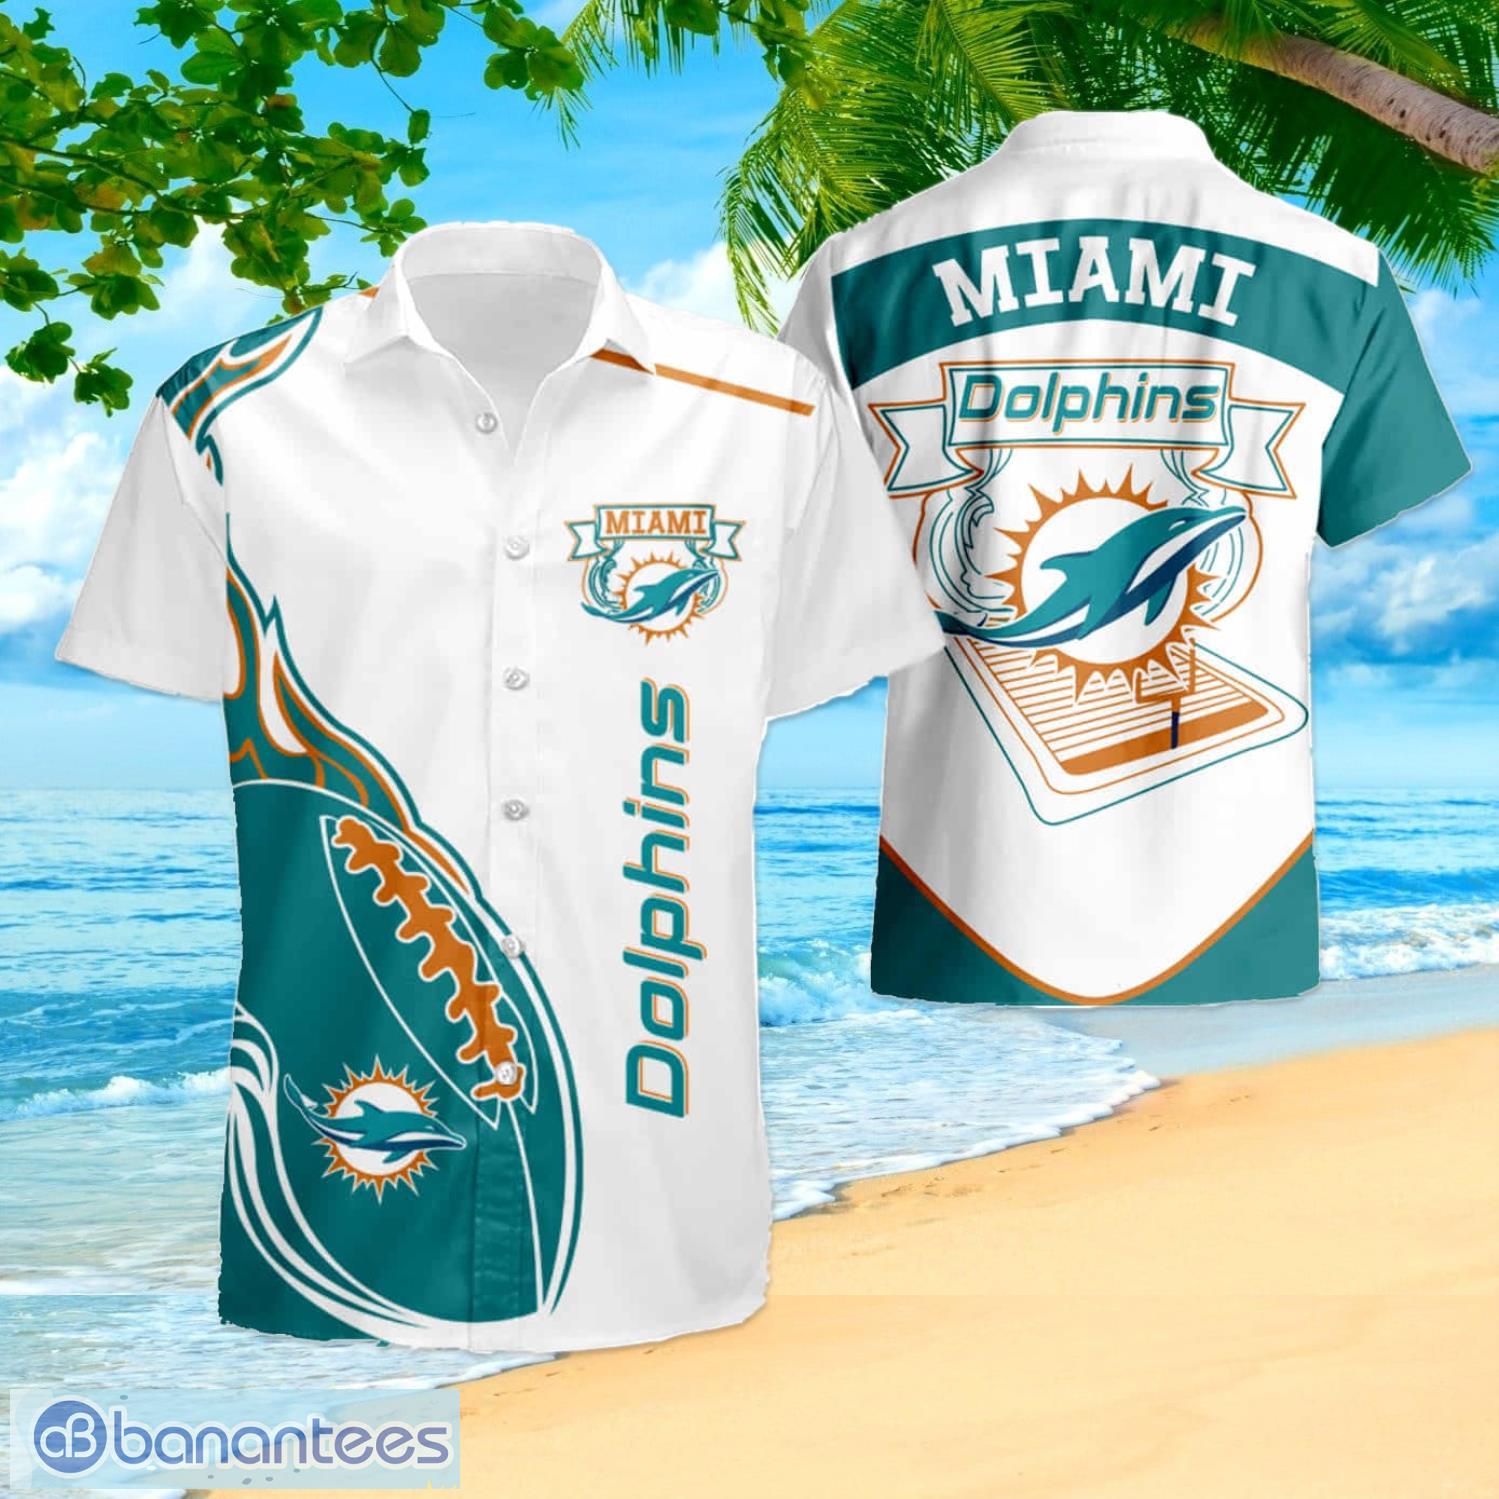 Miami Dolphins N04 Hawaiian Shirt And Shorts Best Gift For Summer Vacation  - Banantees